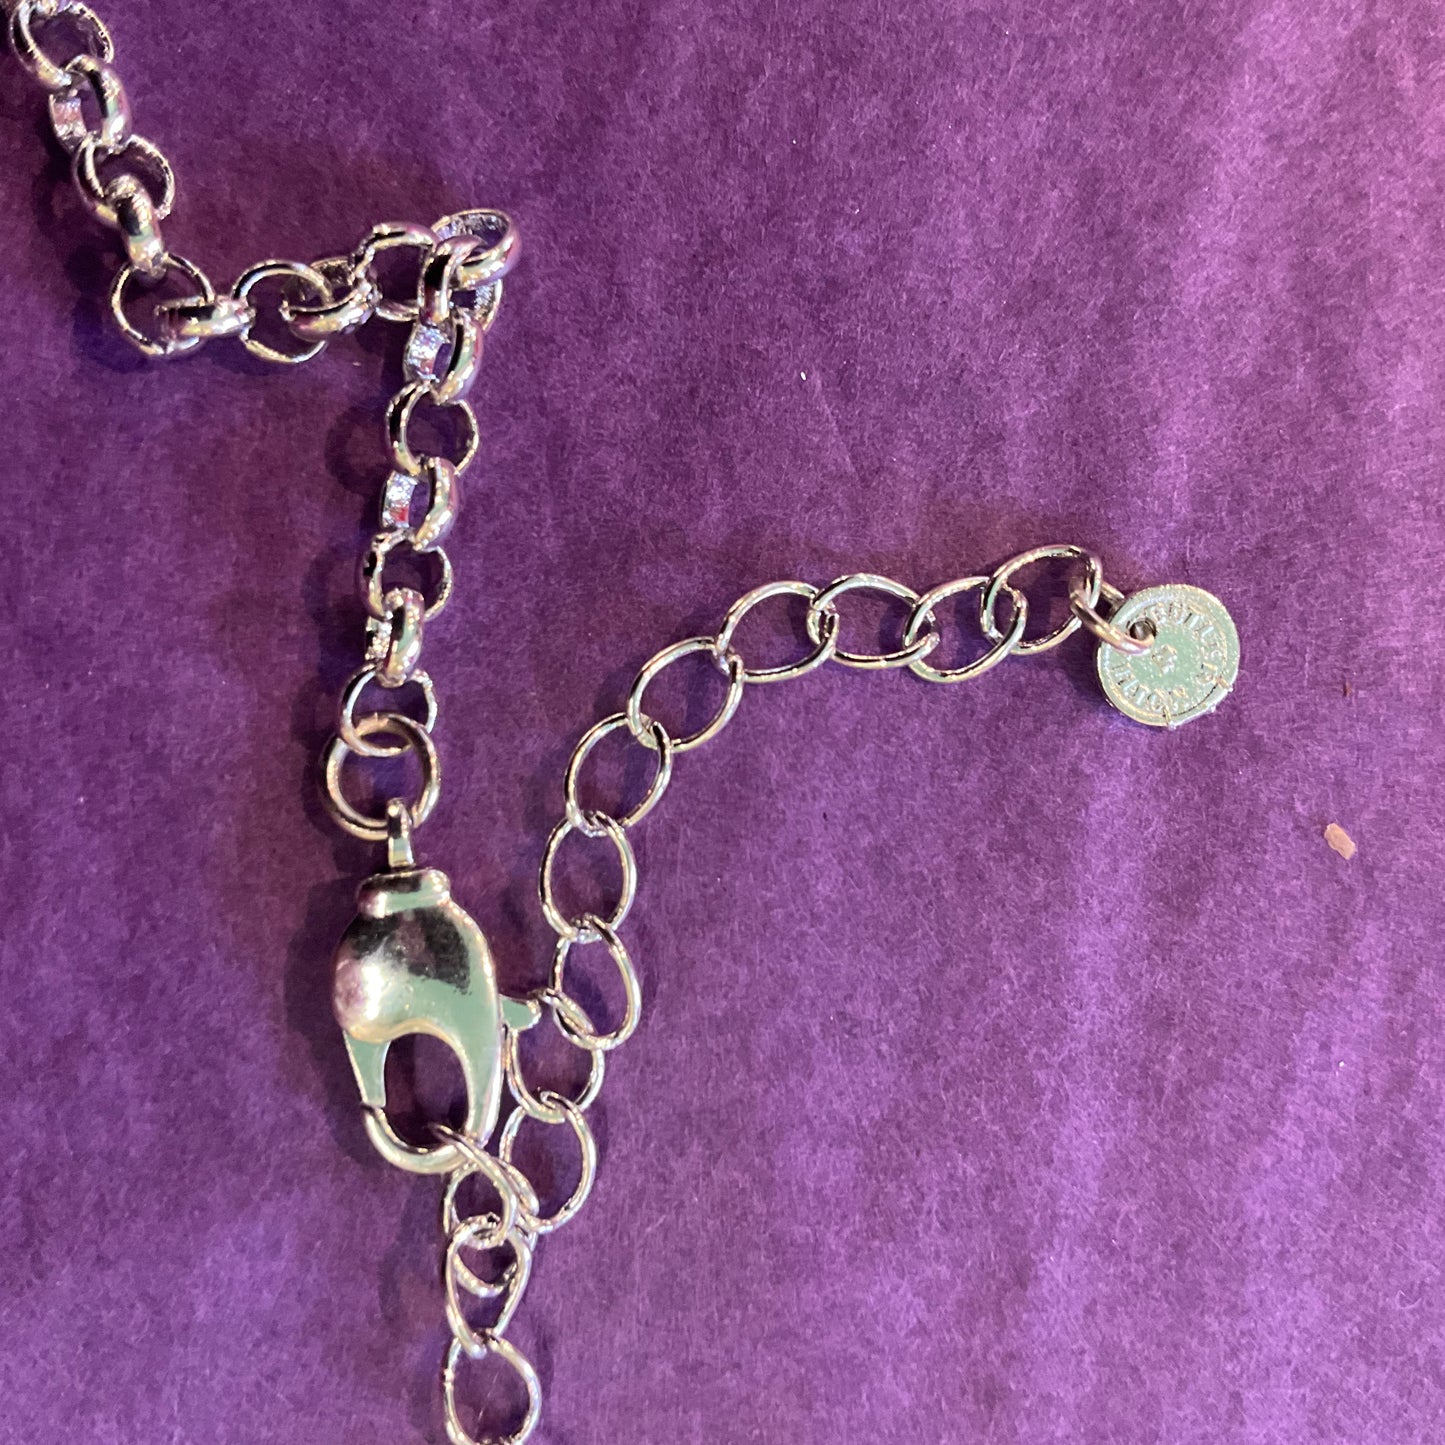 Vintage Butler and Wilson, Angel wing Rhinestone and Crystal large pendant, unused in original packaging, wedding, gift